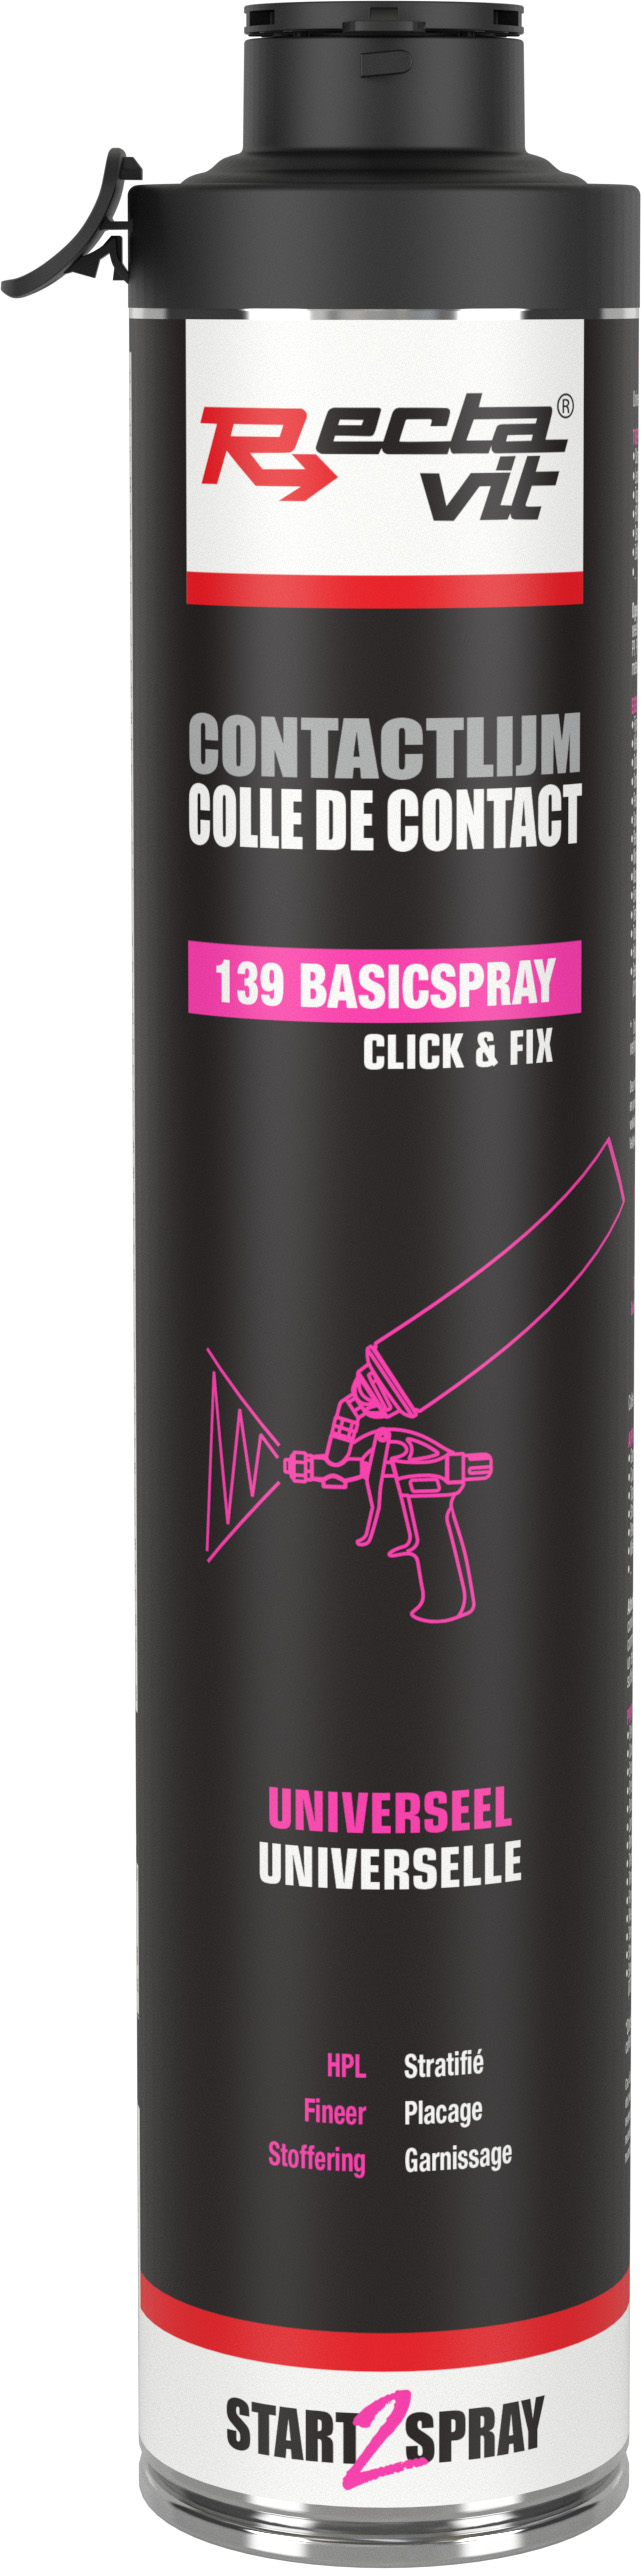 Rectavit 139 Basicspray Click & Fix 750ml